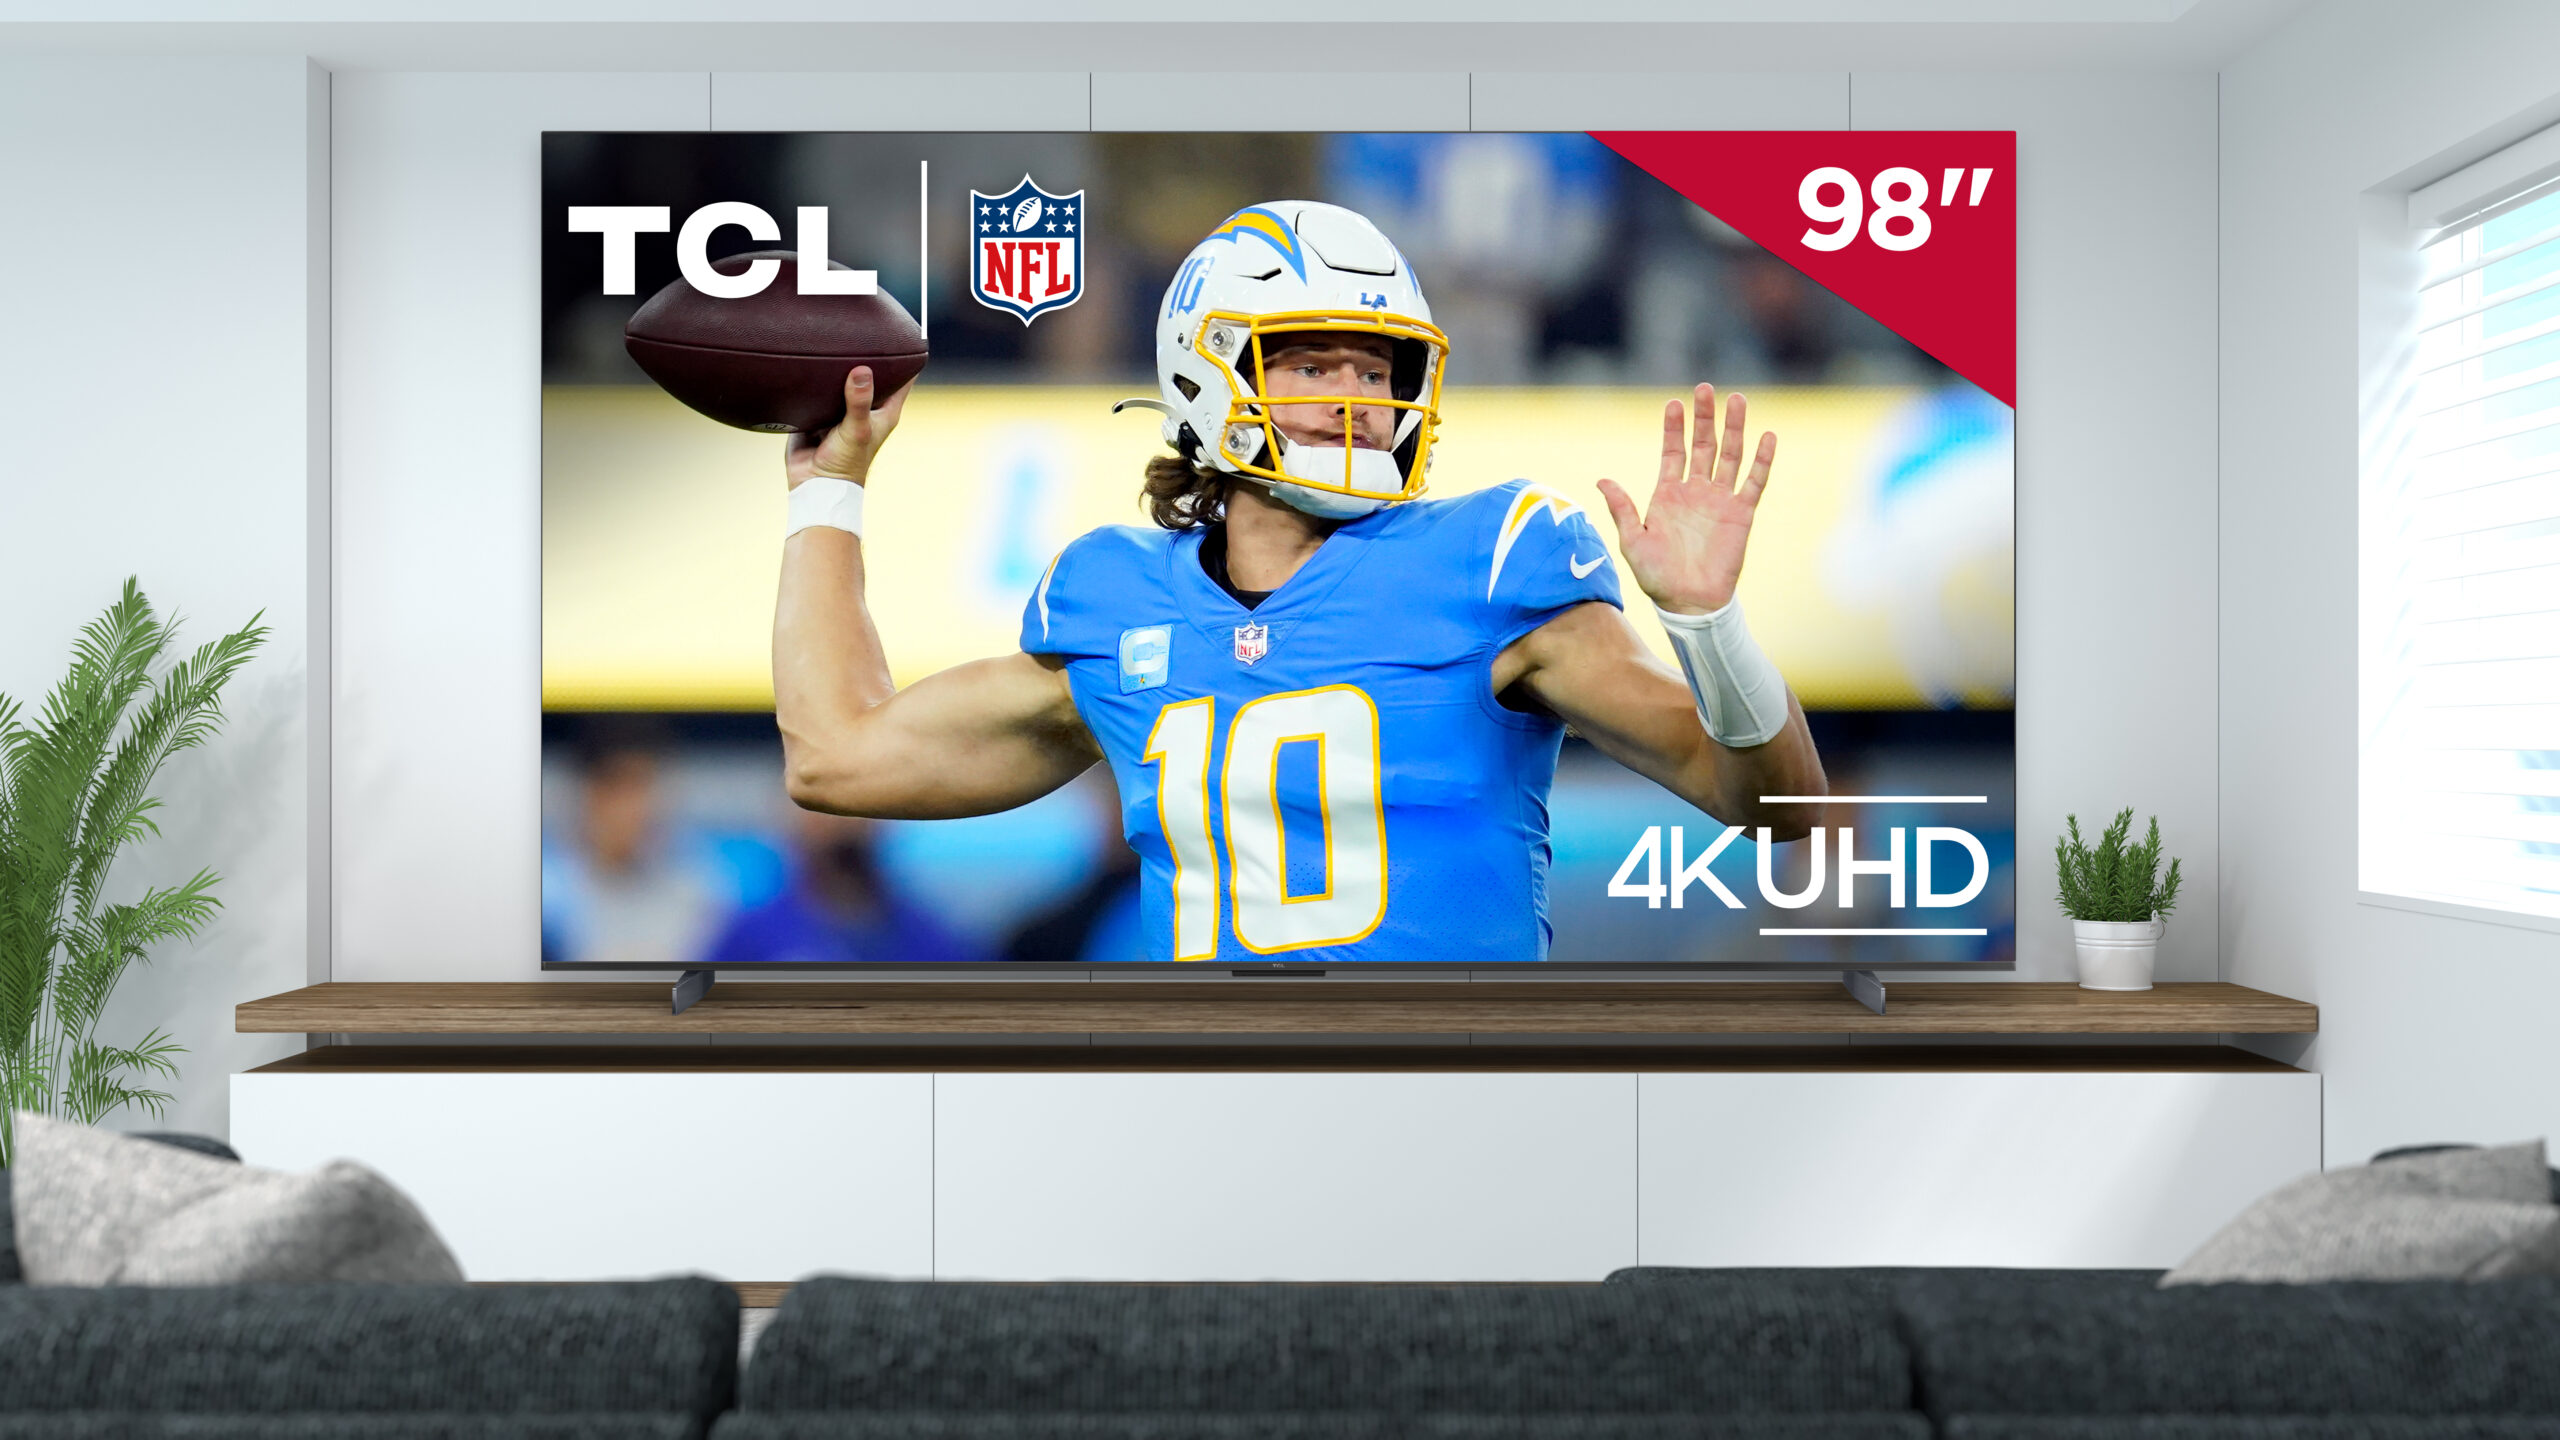 يتوفر تلفزيون TCL الجديد مقاس 98 بوصة S5 مع صفقة تذكرة NFL Sunday